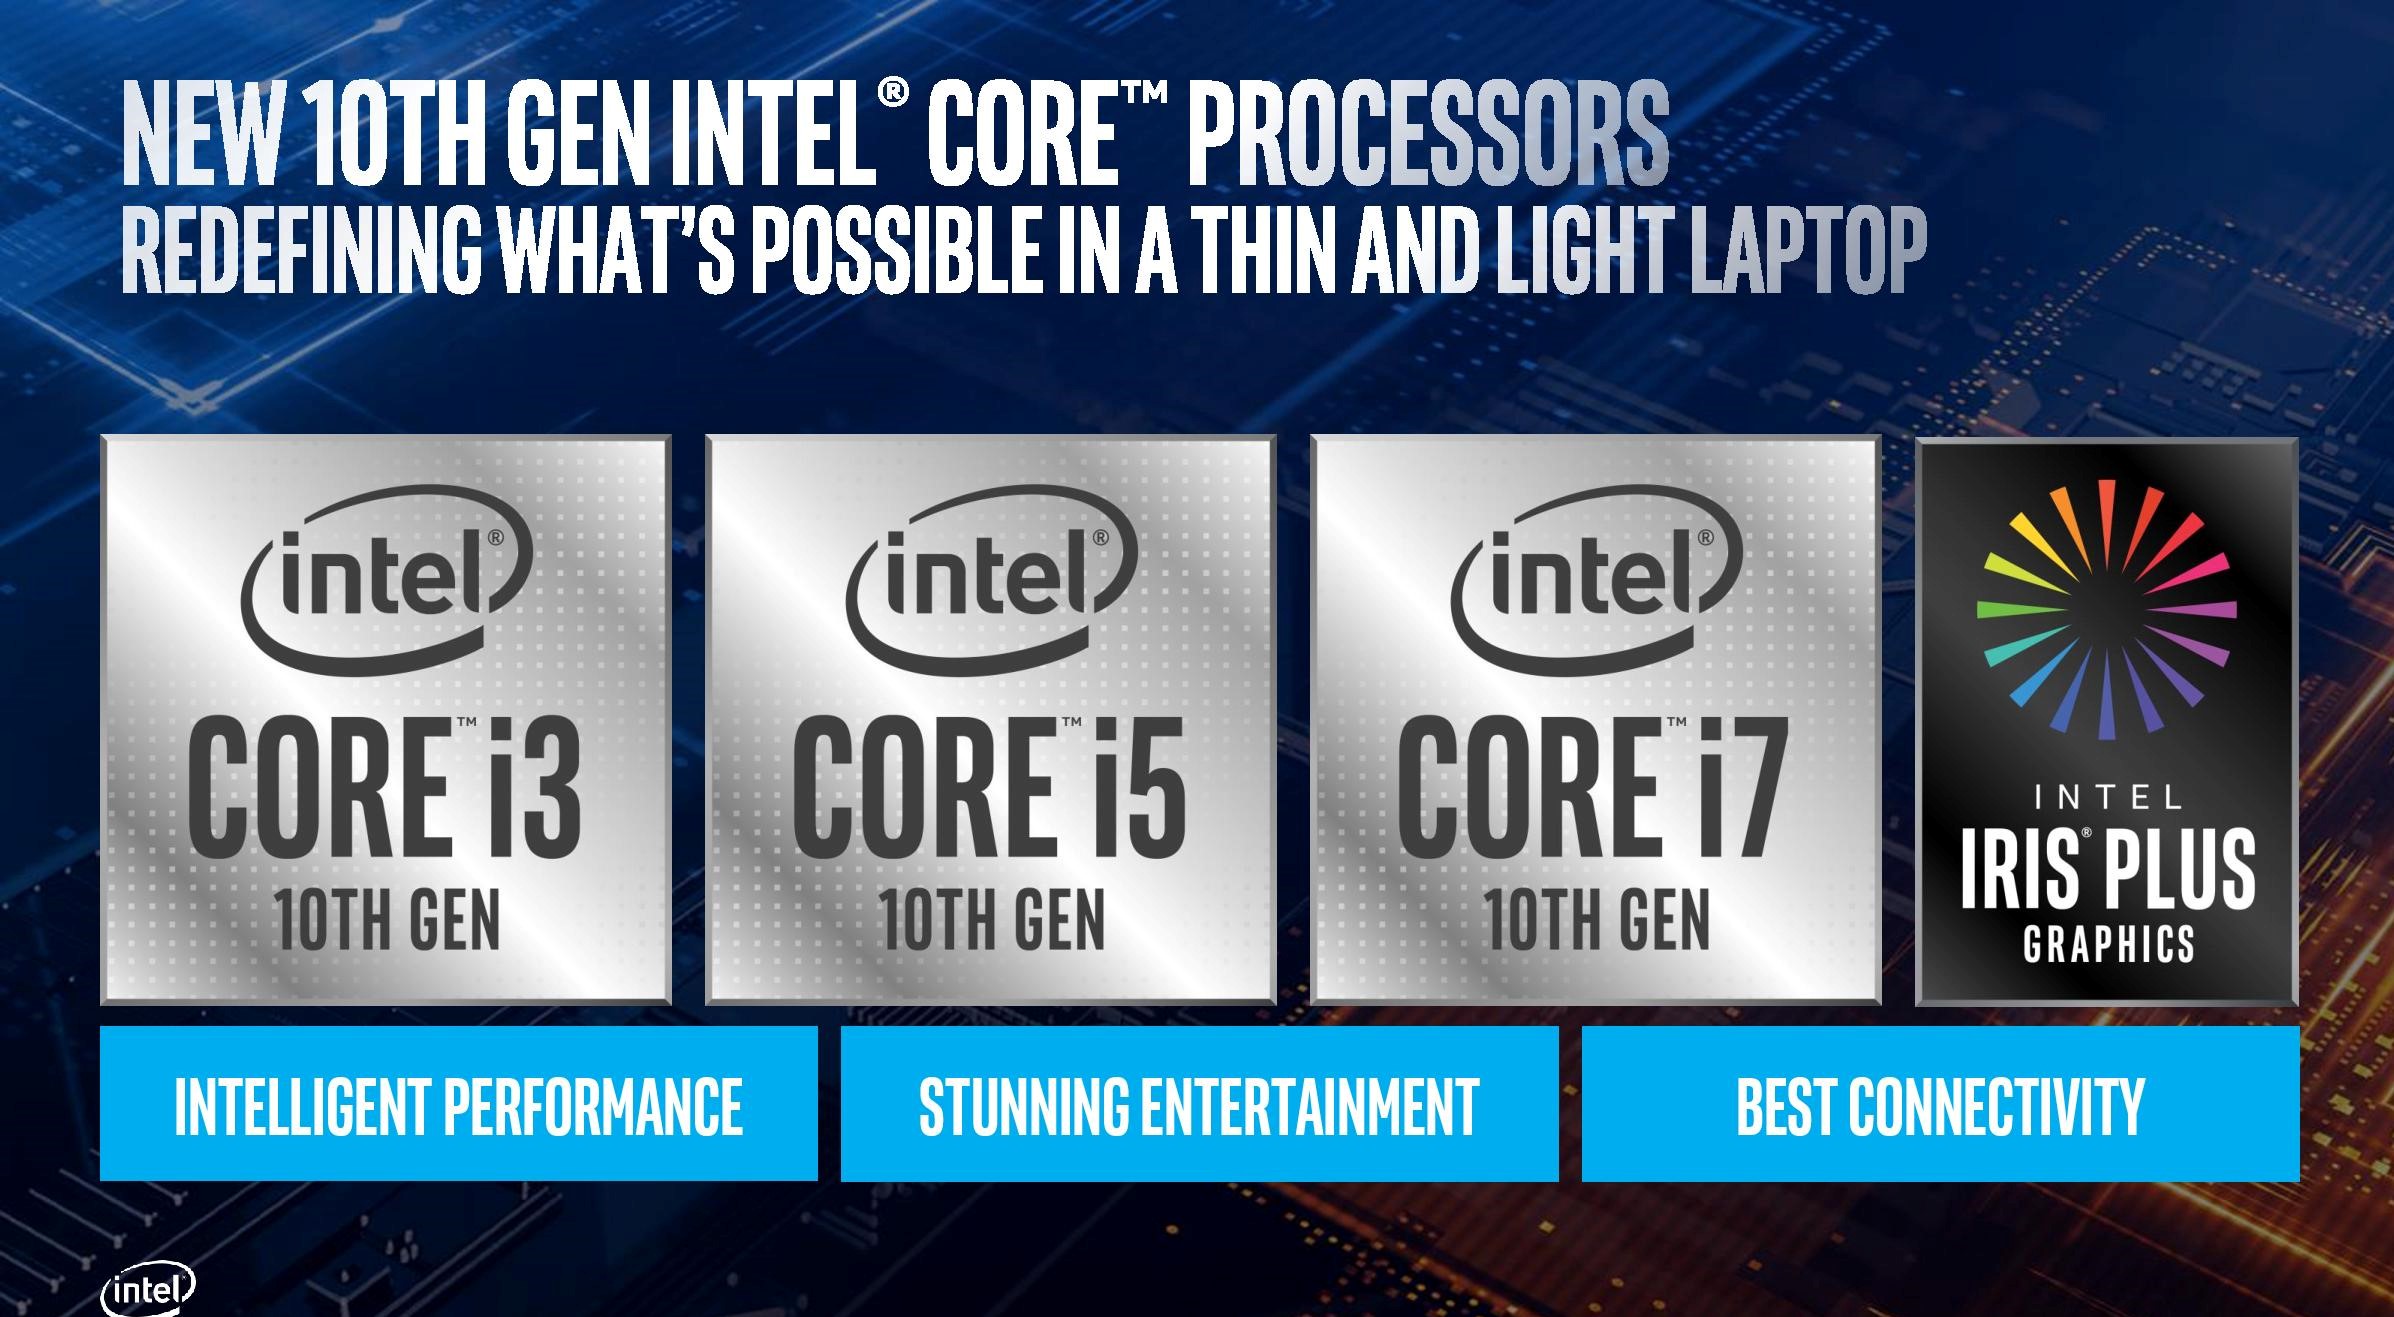 Prosesor Intel 10th Gen 10nm ‘Ice Lake 'untuk laptop dan 2-in-1 diumumkan